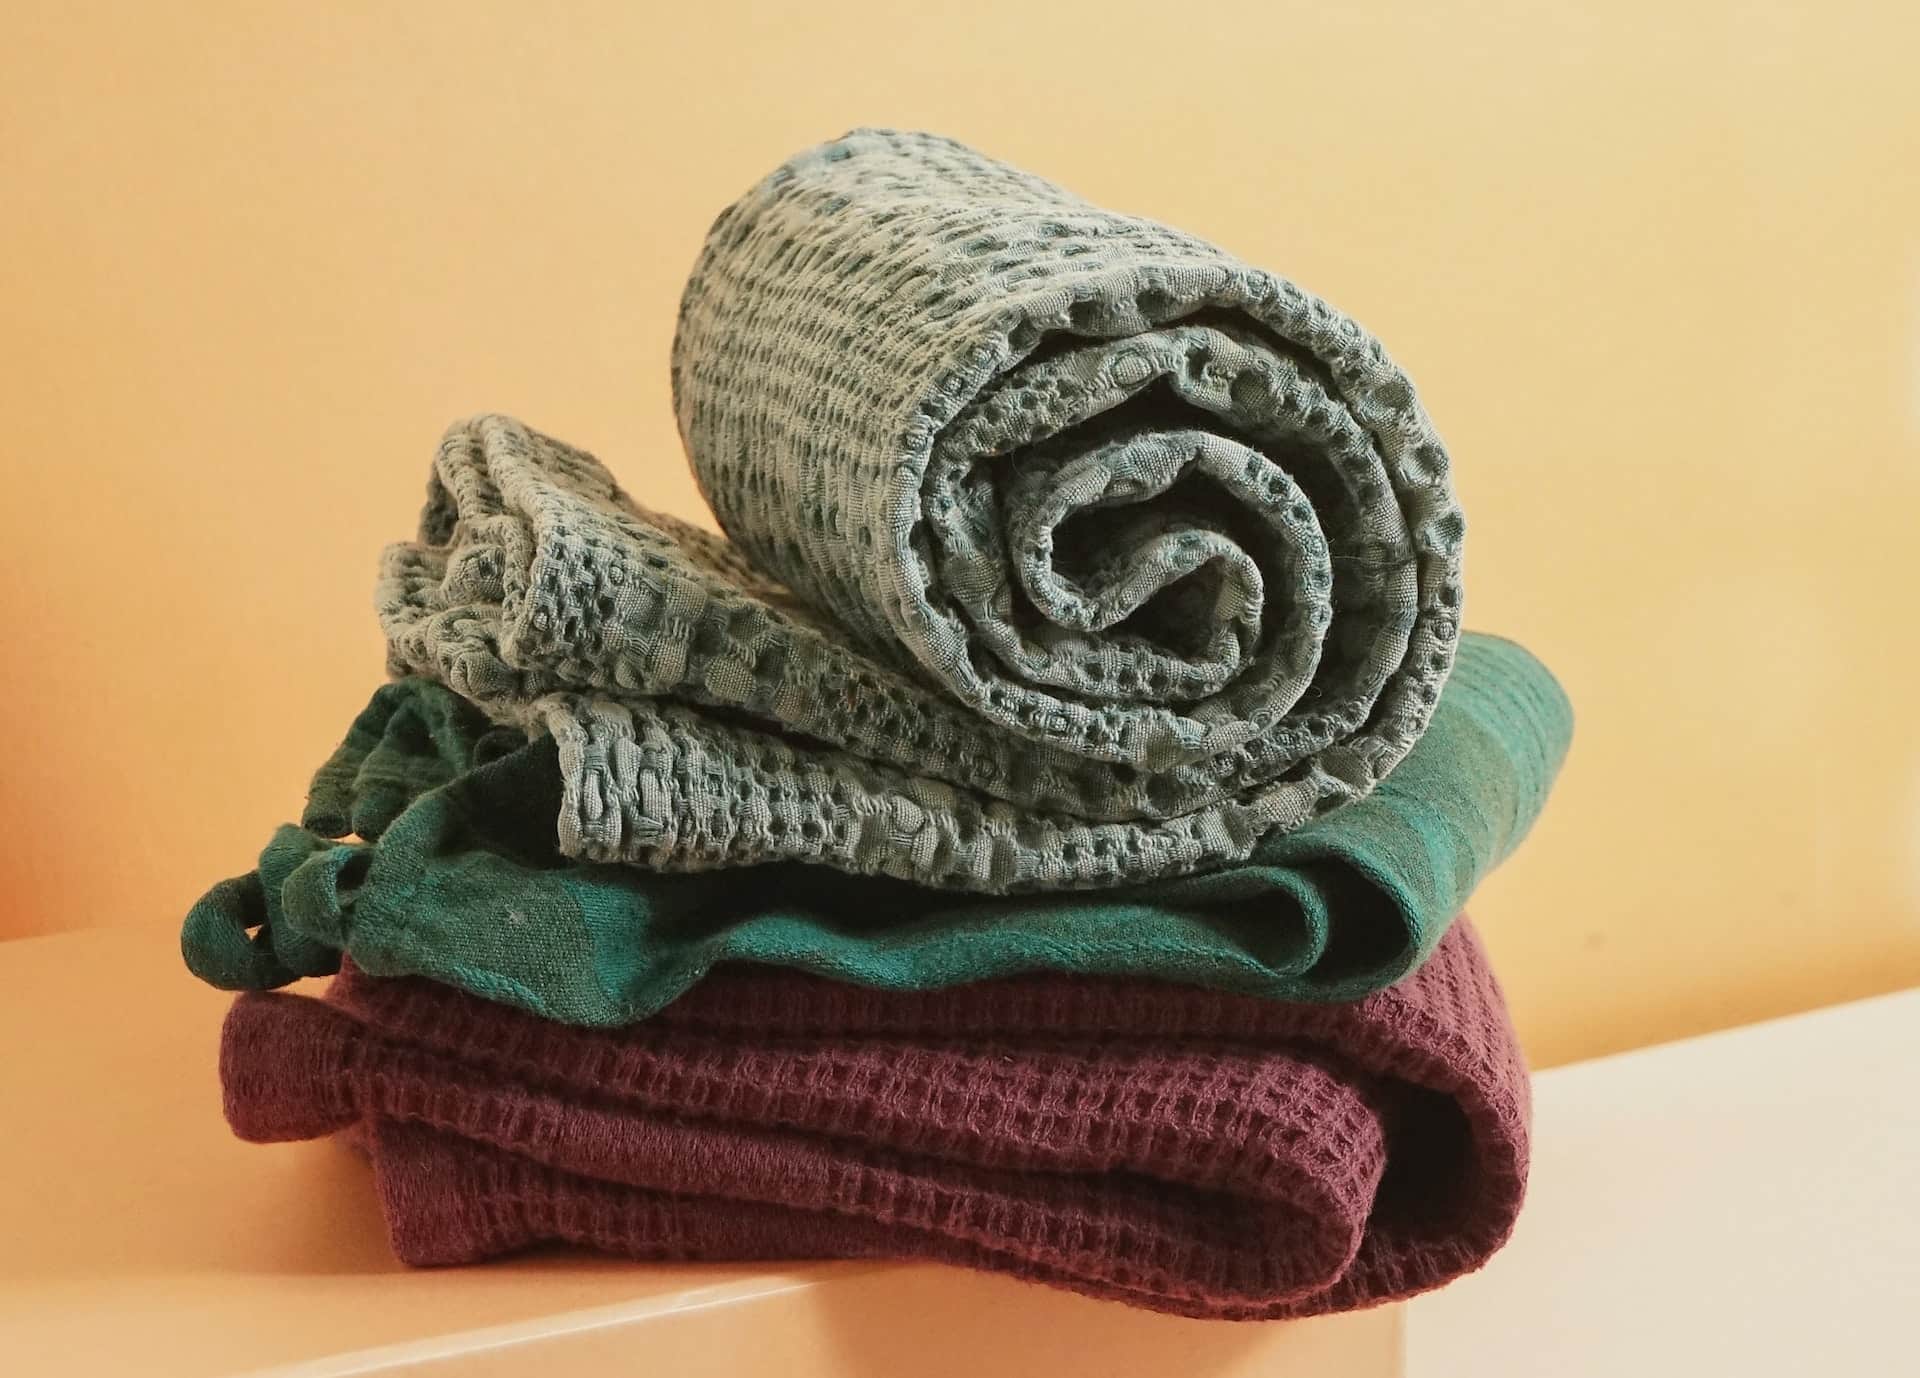 https://tubtopia.com/assets/images/posts/textured-towels.jpeg